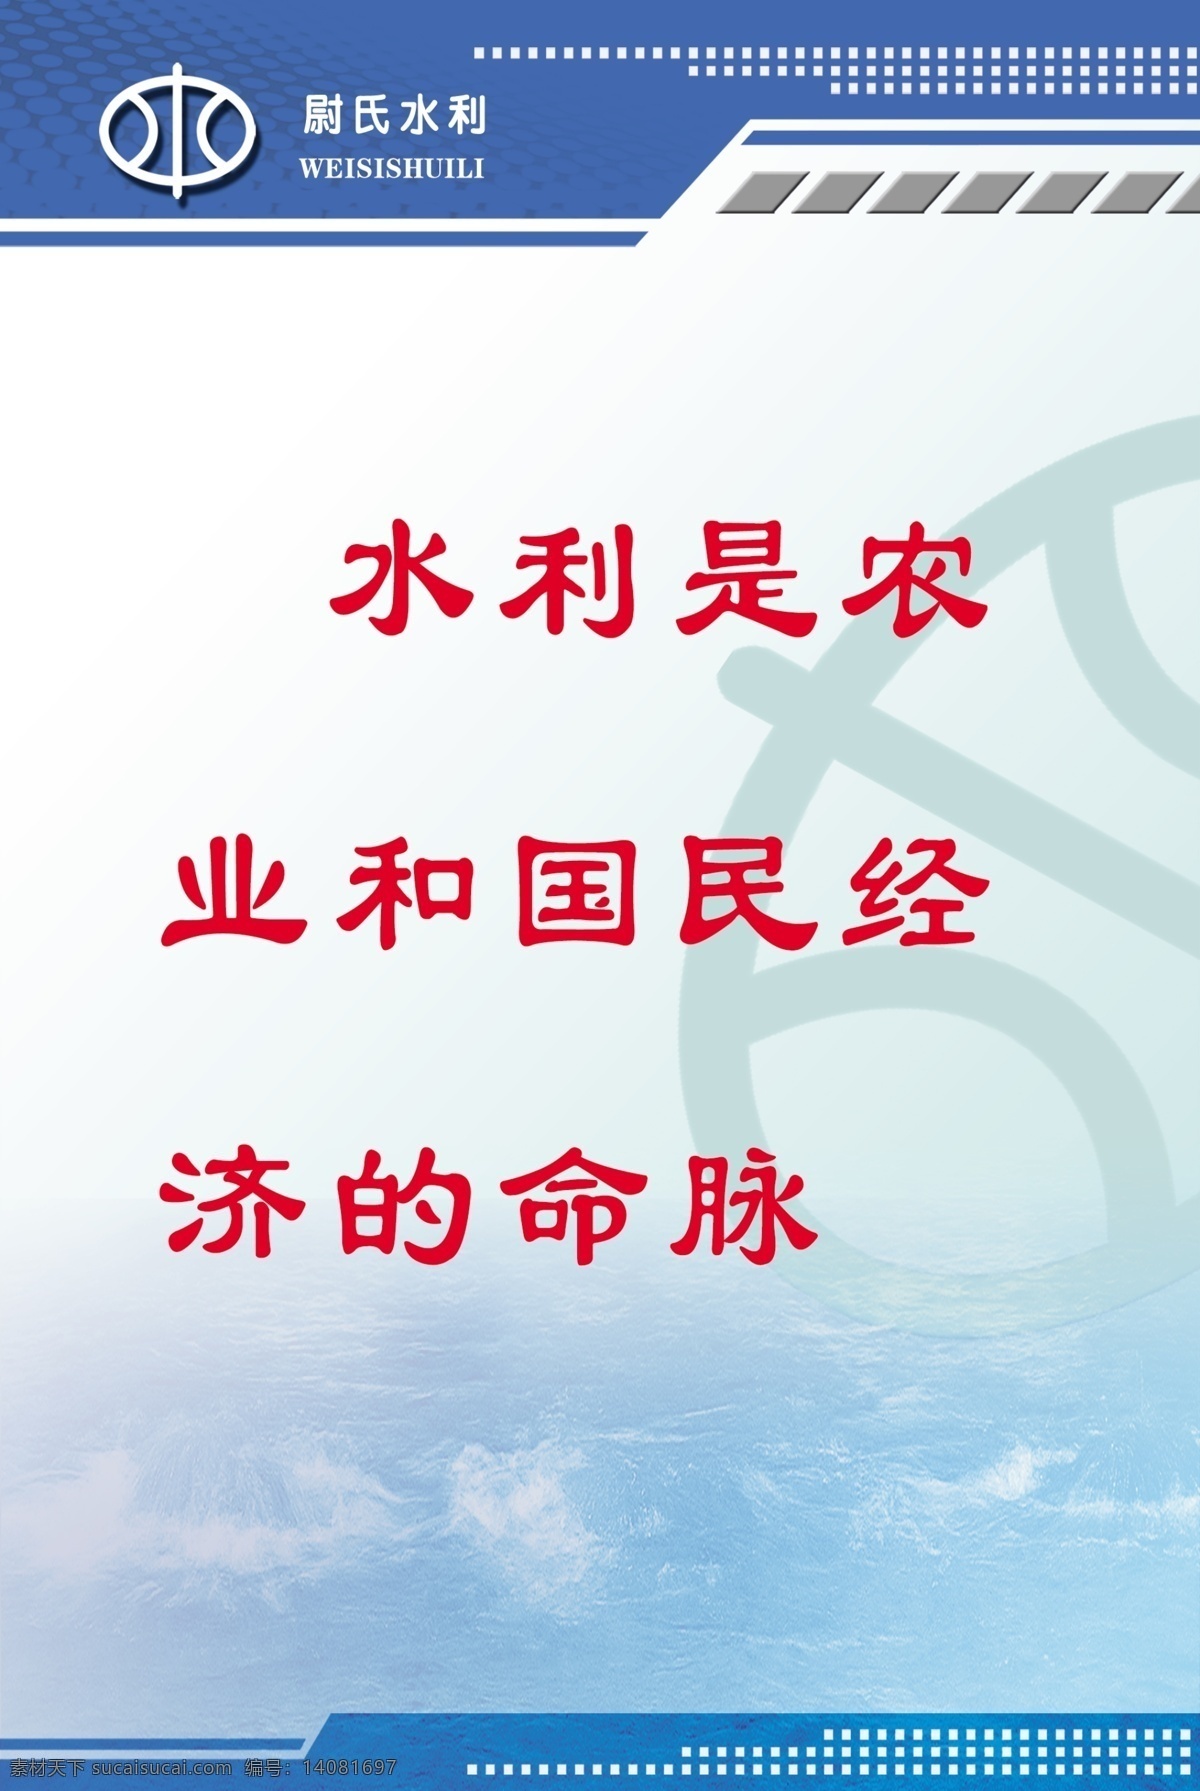 水利标语 水利标志 中国水利 格言展板 展板模板 psd分层